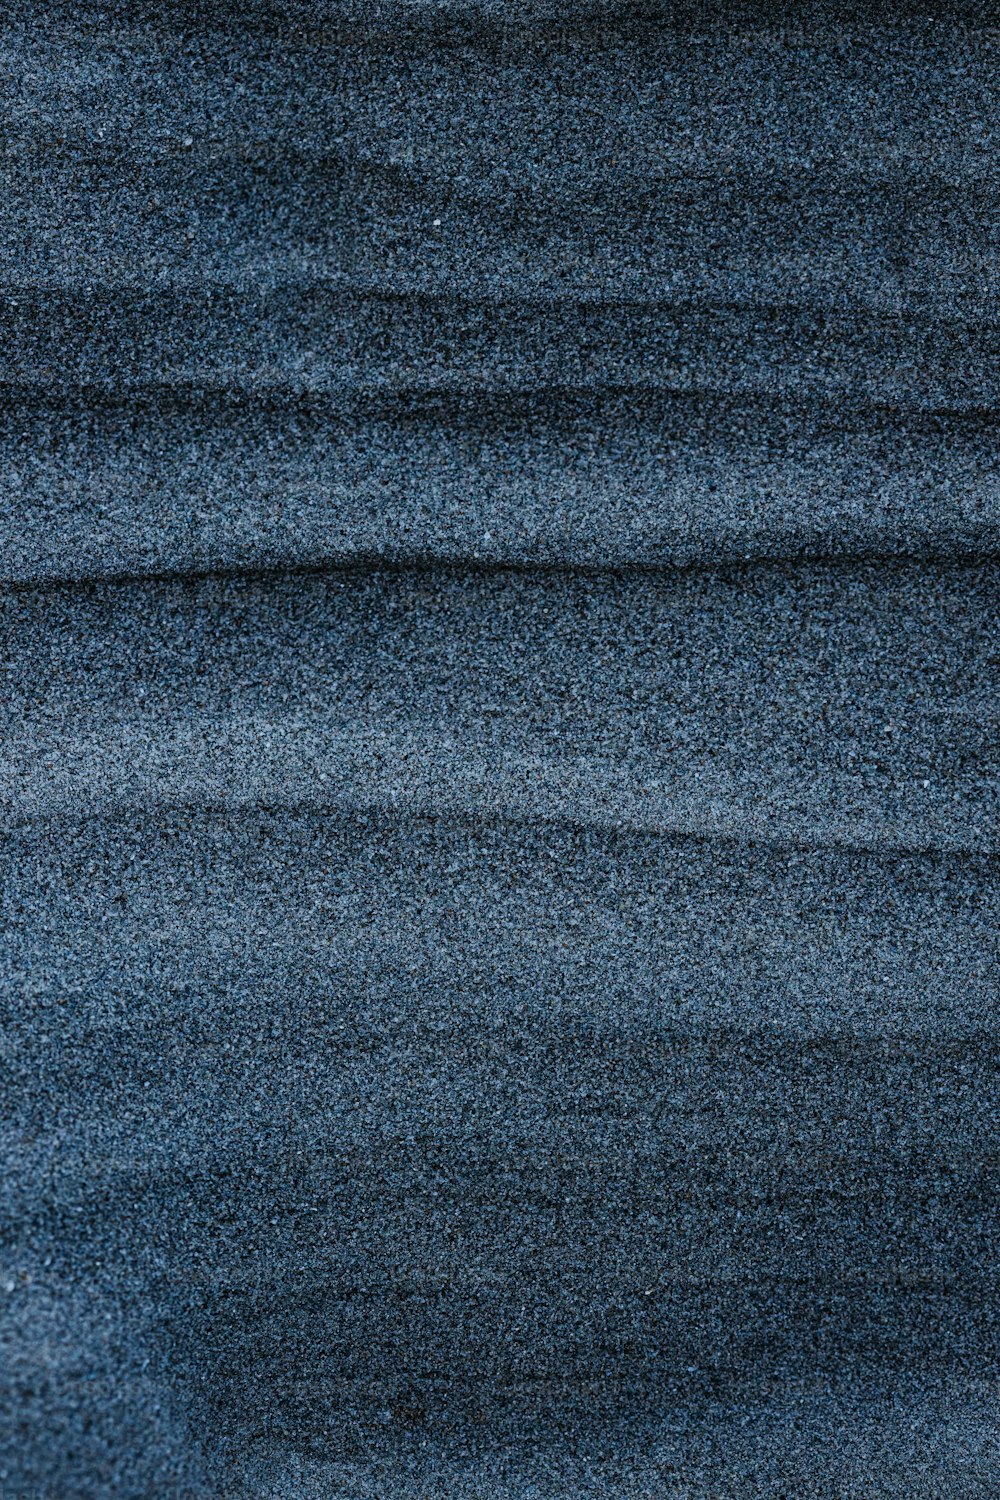 un fondo azul oscuro con una textura rugosa